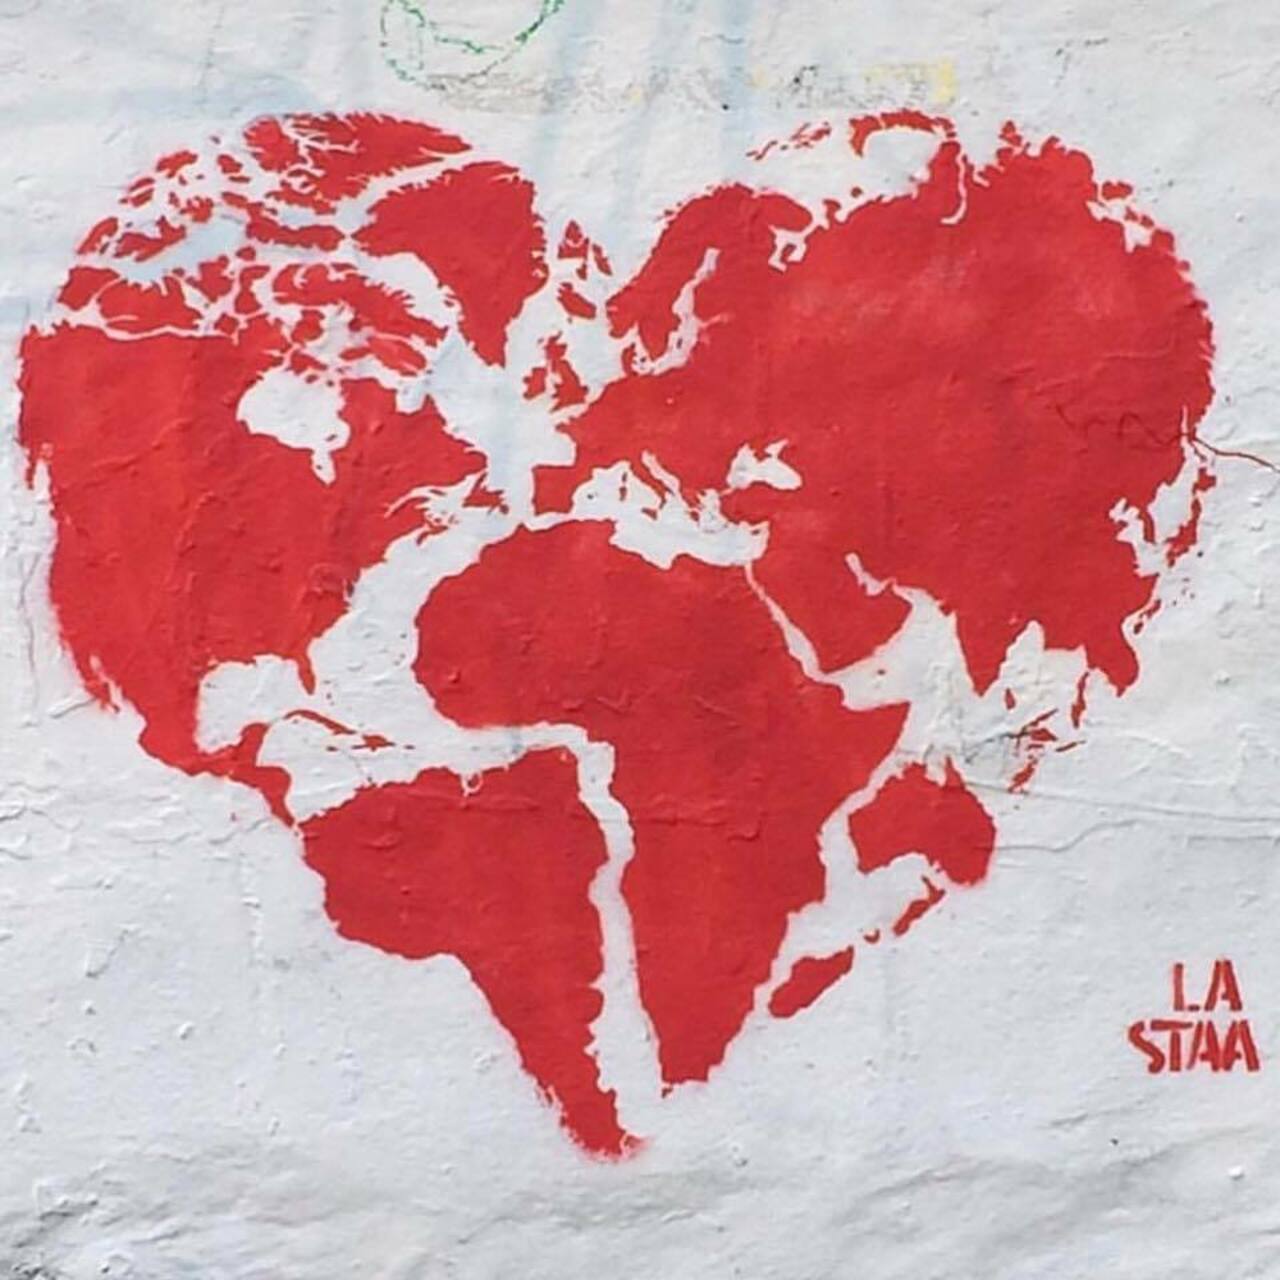 We need #love in this #world! – #streetart – Be ▲rtist – Be ▲rt Magazine https://beartistbeart.com/2016/08/10/we-need-love-in-this-world-streetart/?utm_campaign=crowdfire&utm_content=crowdfire&utm_medium=social&utm_source=twitter https://t.co/GFgLcVrhPQ